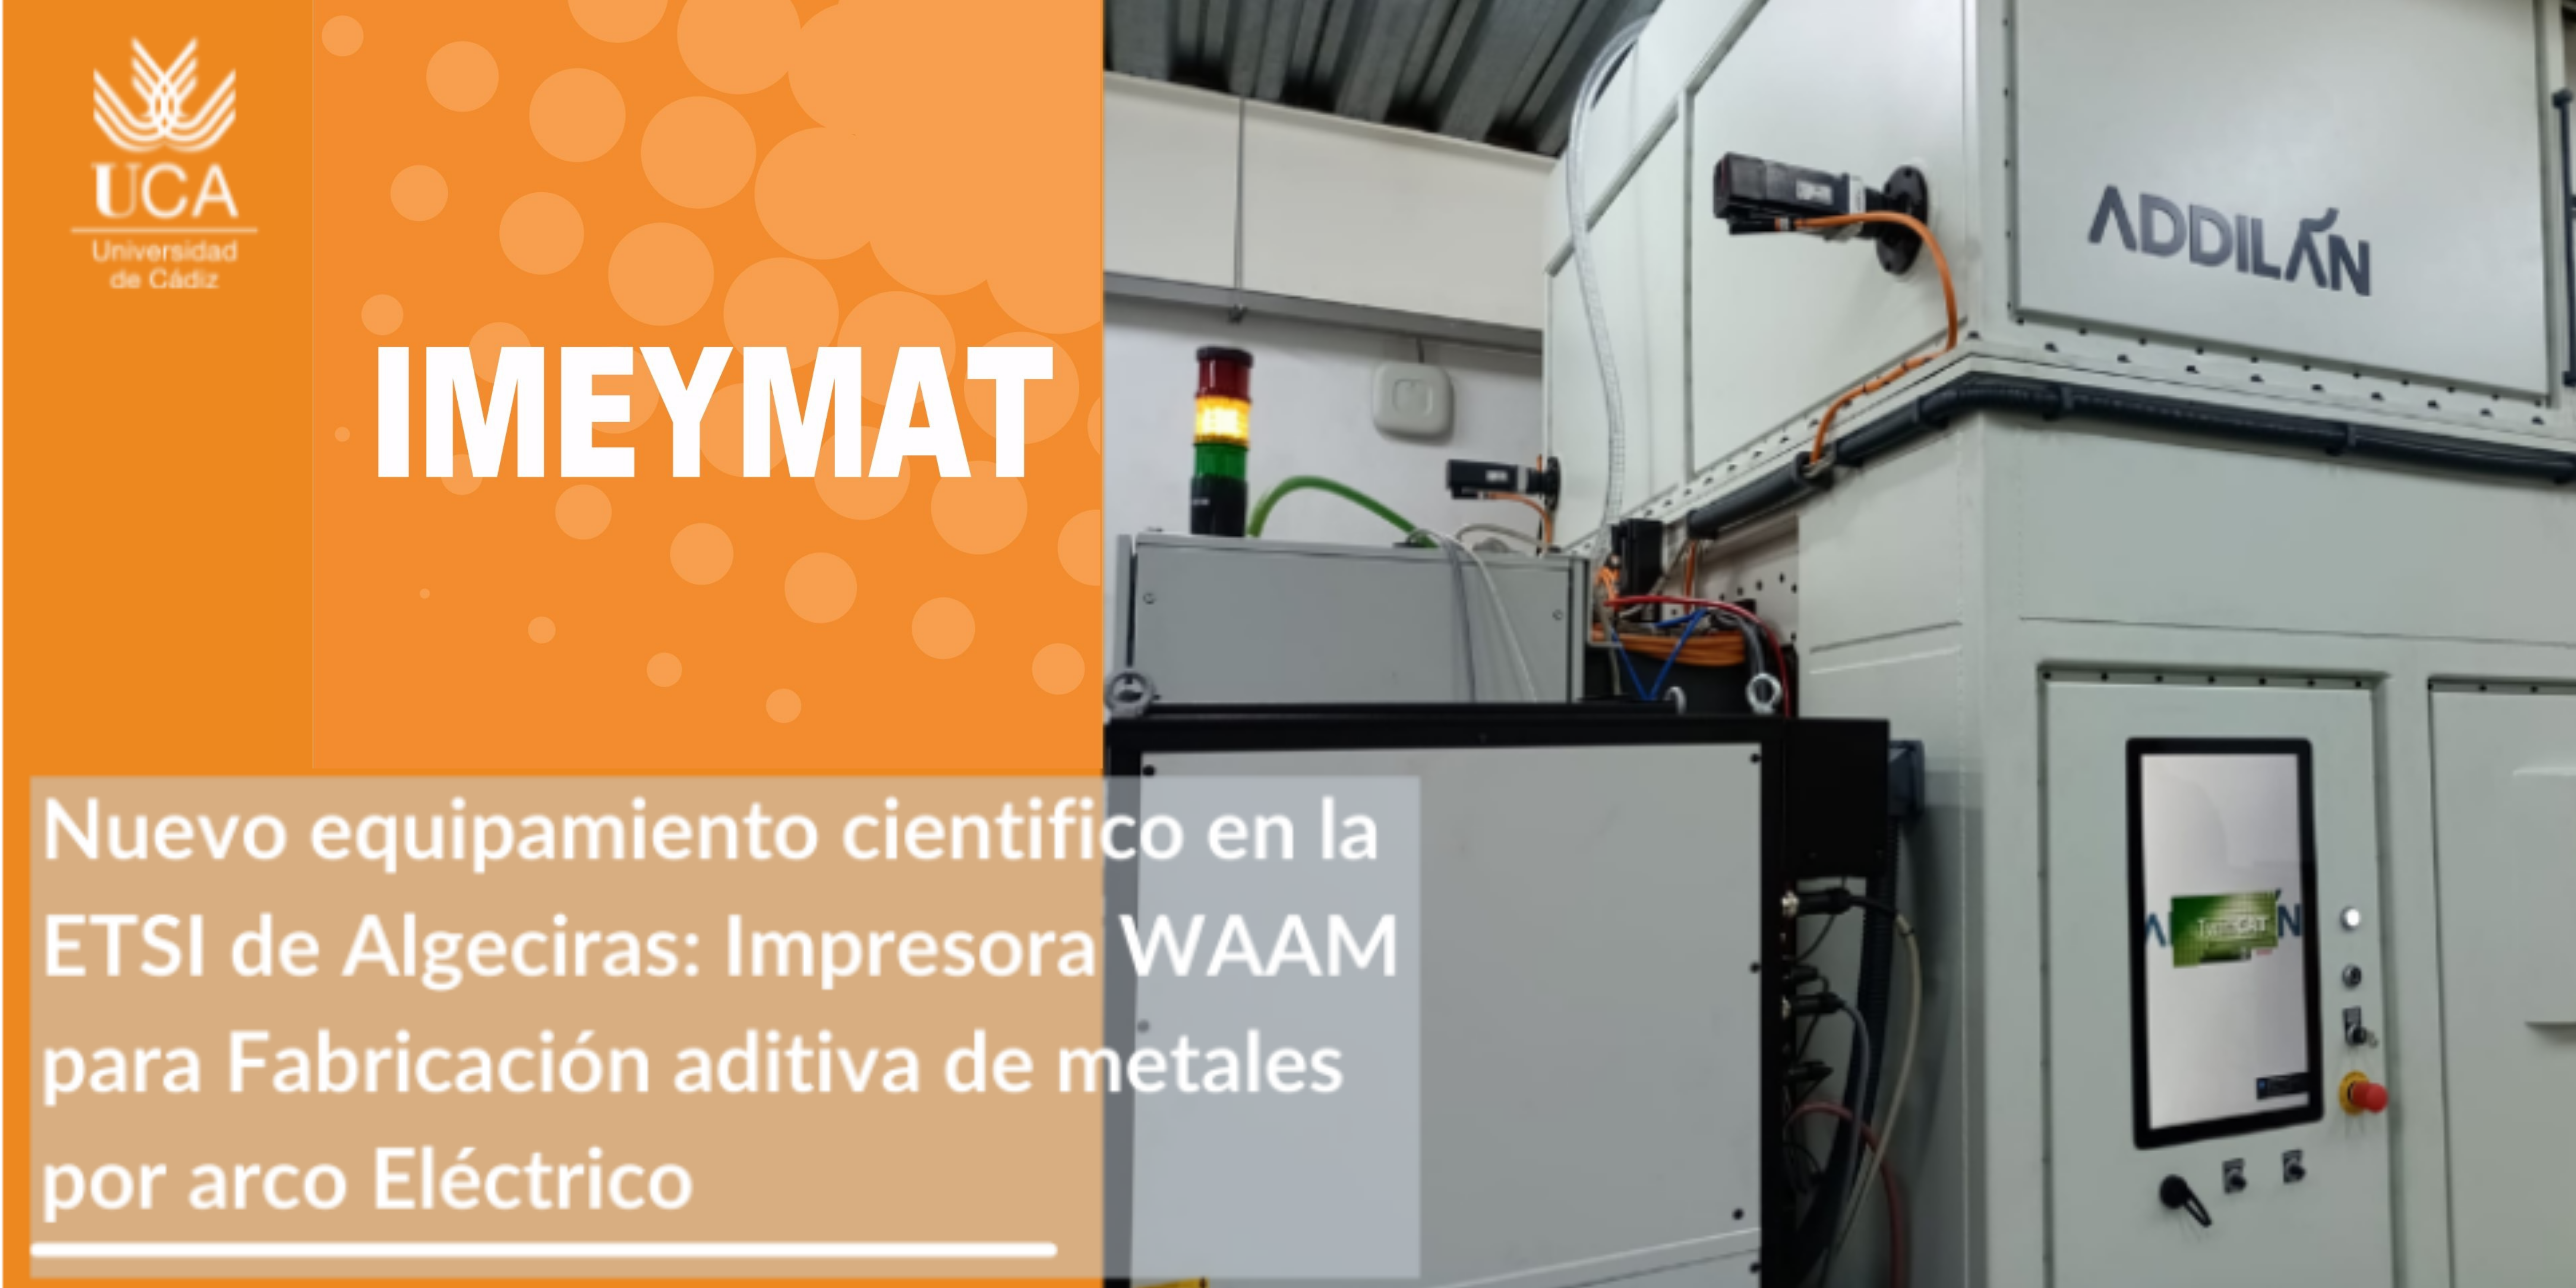 Compañeros del Instituto IMEYMAT lideran la adquisición de un equipamiento de fabricación aditiva WAAM para realizar piezas metálicas de gran formato en la ETSIA